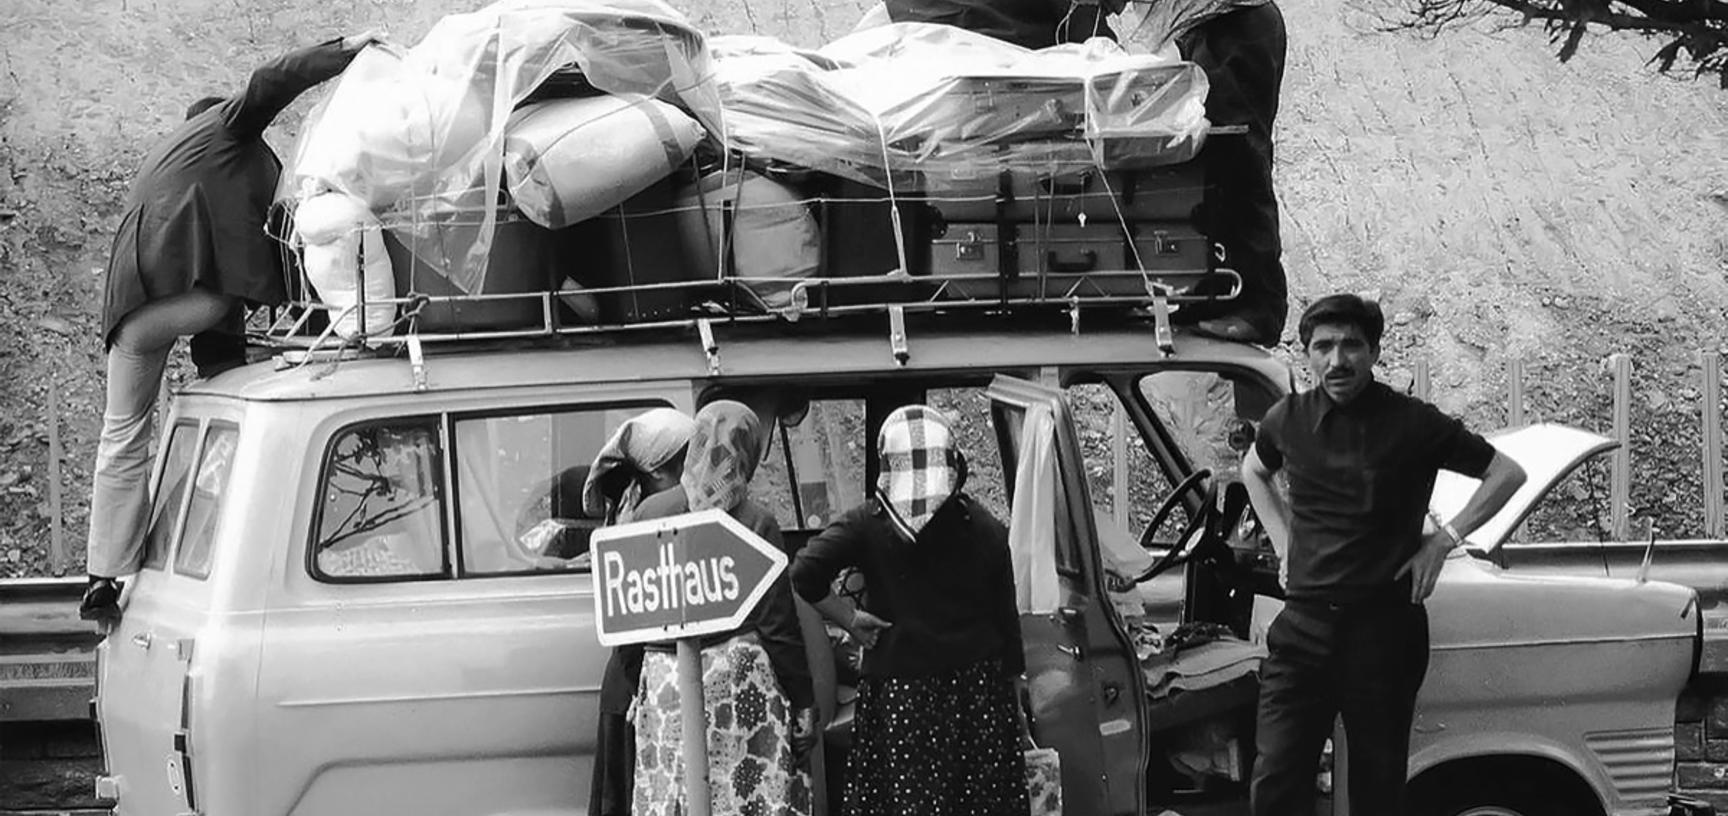 Immigrants packing their belongings on a van